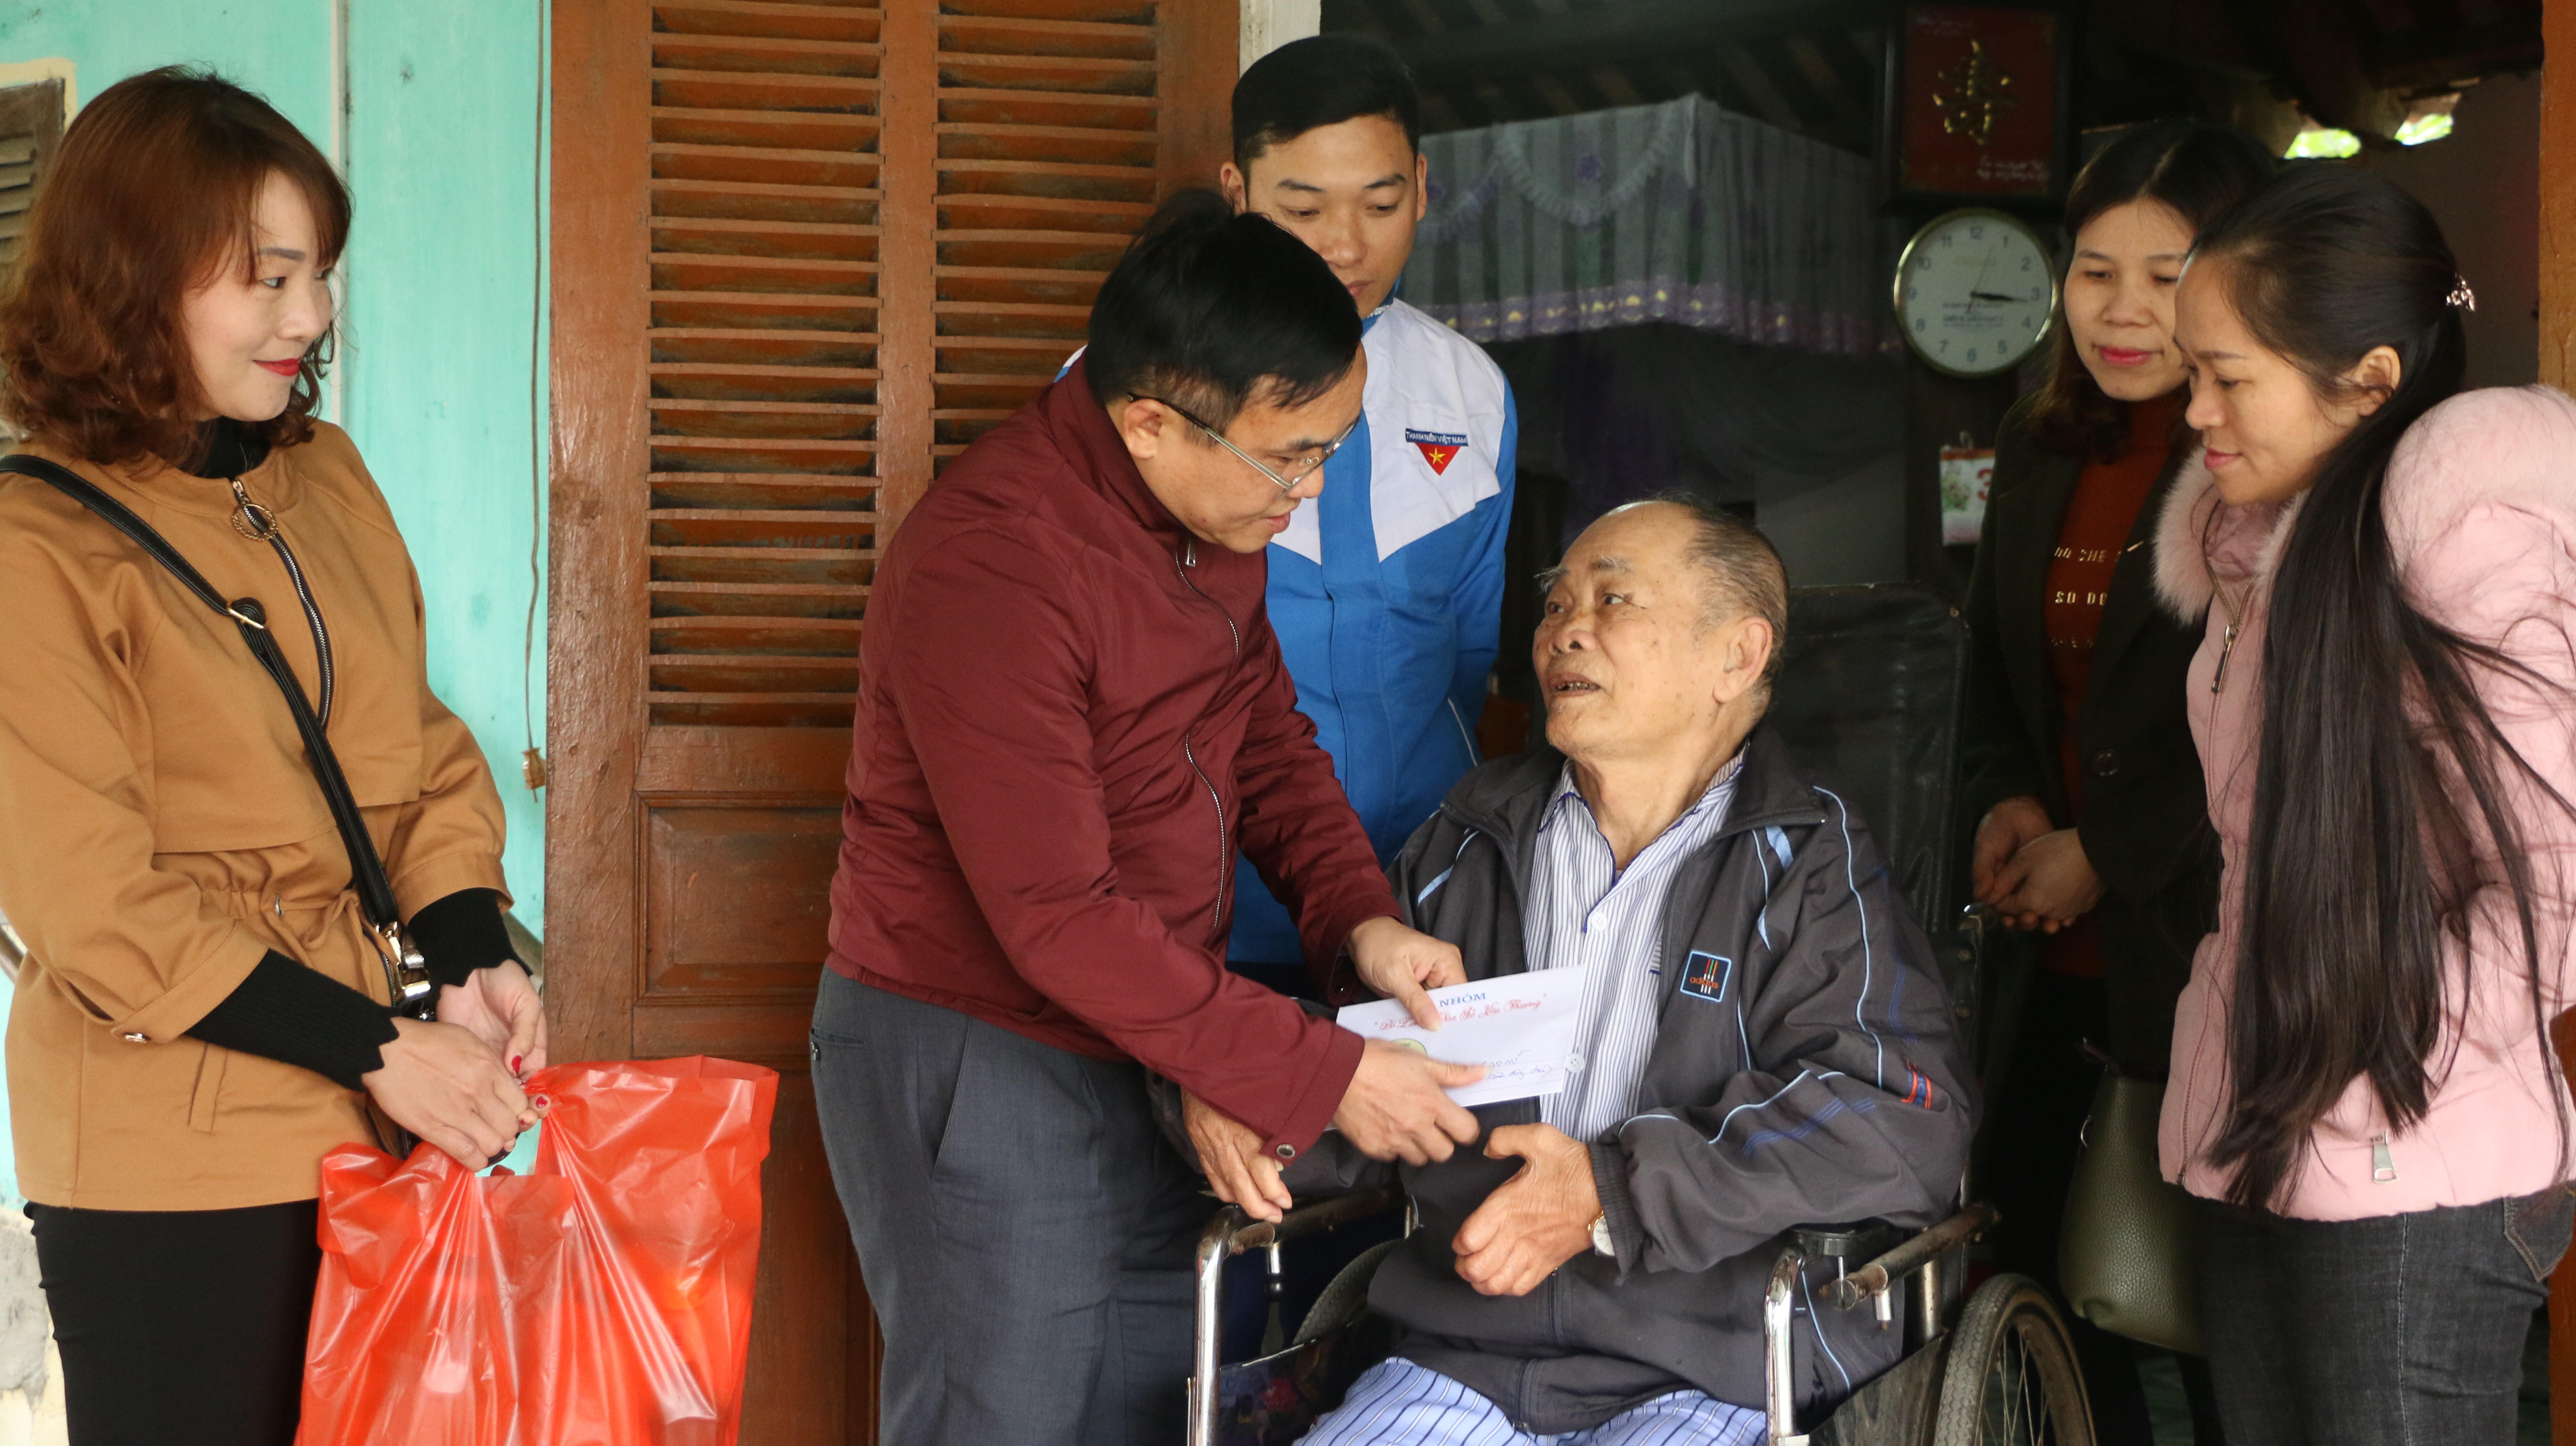 Đồng chí Ngọc Kim Nam - Chủ tịch UBND huyện cùng các thành viên nhóm “Đô lương Chia sẻ yêu thương” trao tặng quà ông Nguyễn Hoàng Thưởng, thương binh 1/4 ở xã Thịnh Sơn.